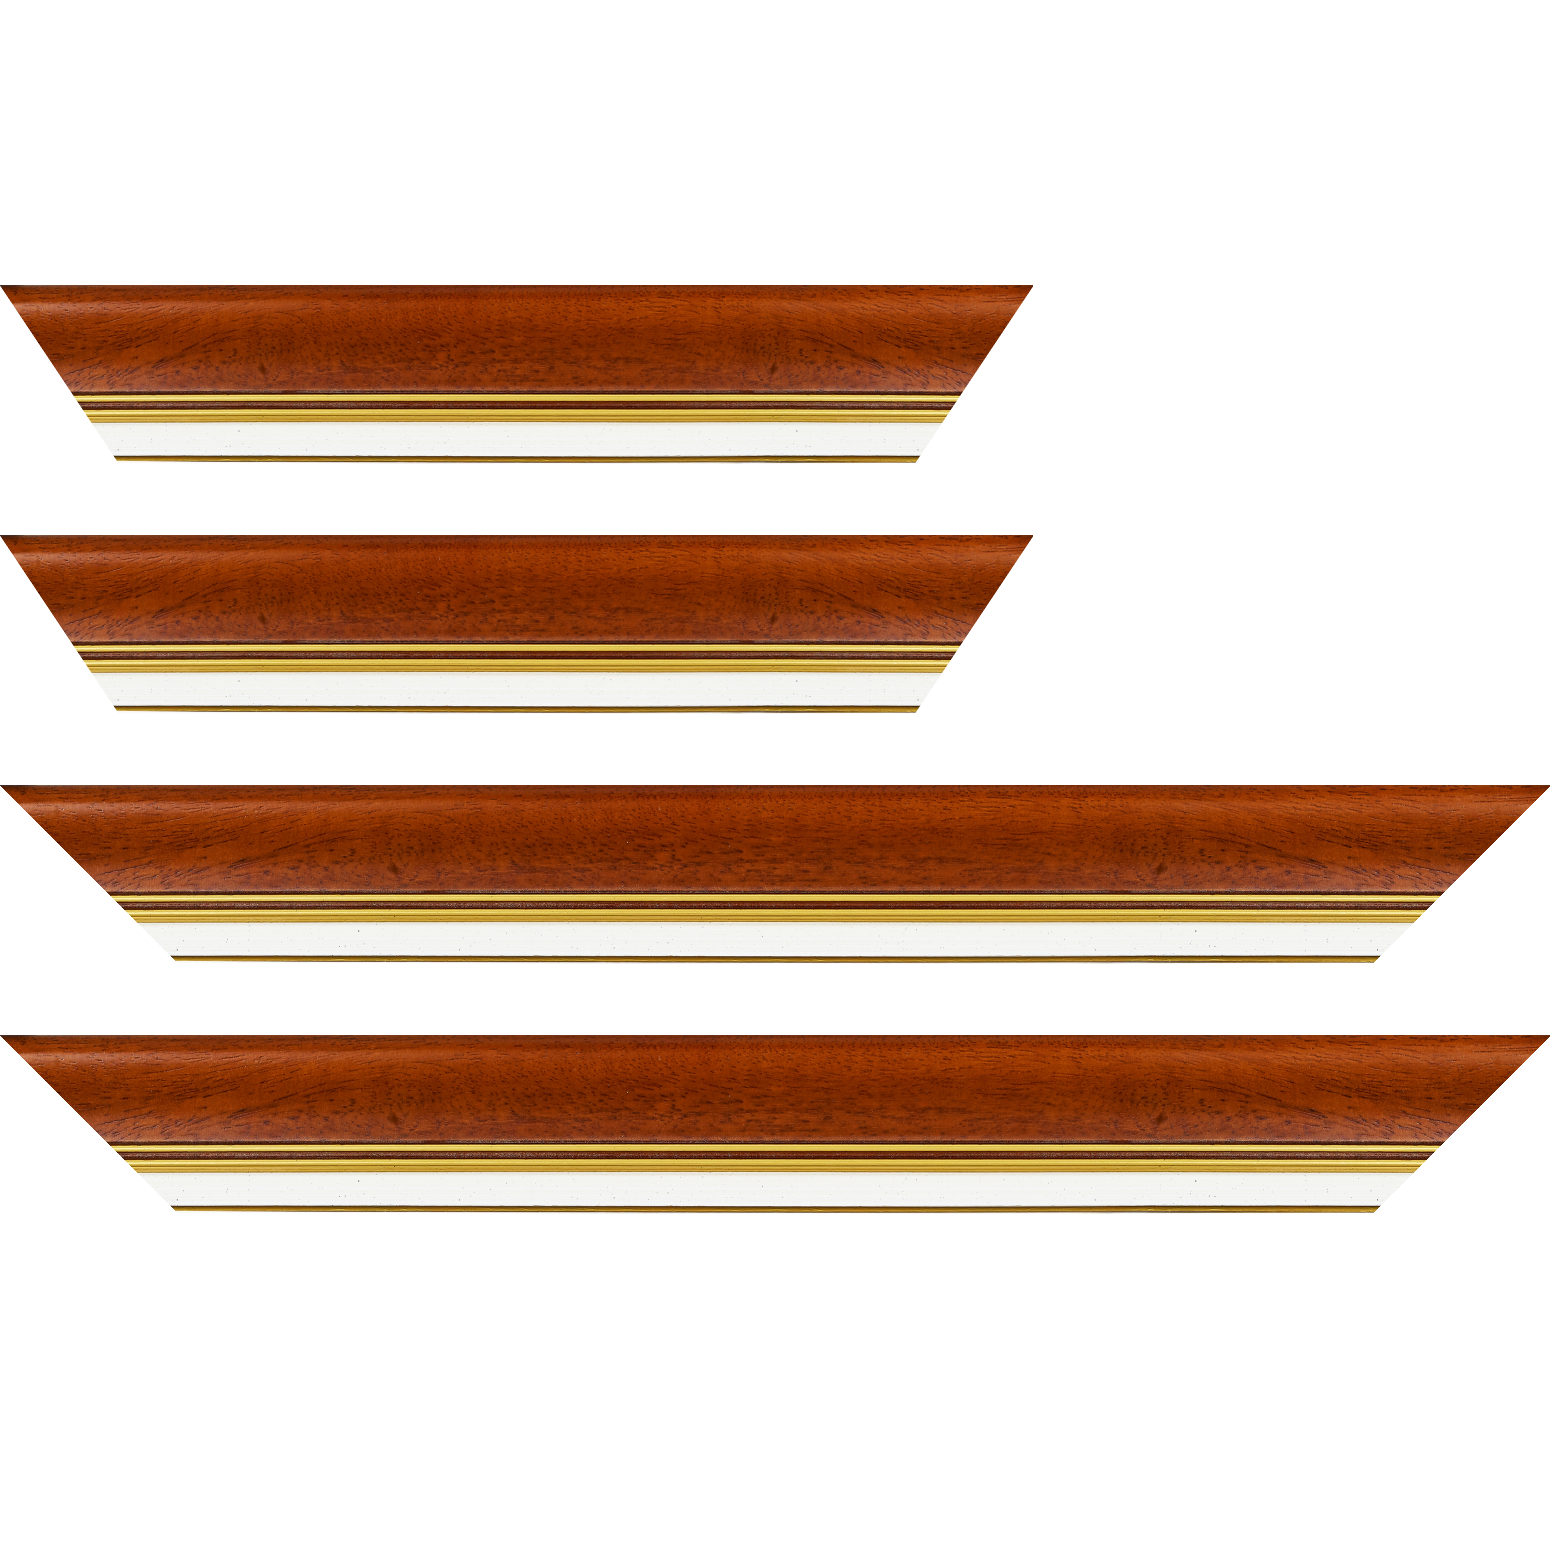 Baguette bois profil incurvé largeur 5.7cm de couleur marron ton bois marie louise blanche mouchetée filet or intégré - 84.1x118.9